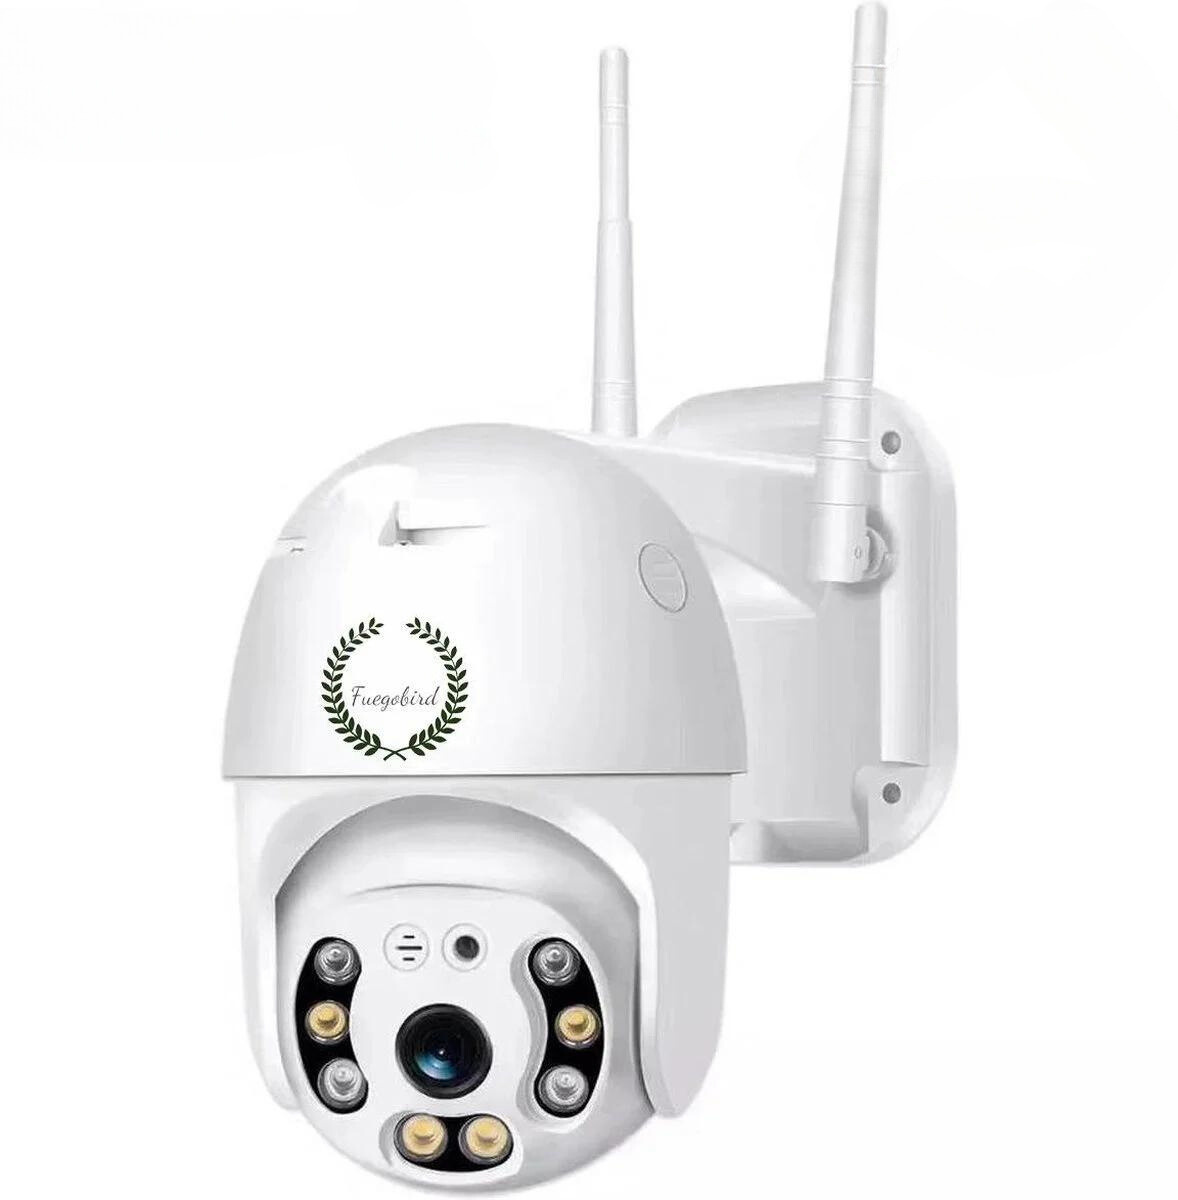 PTZ Kamera günstig Kaufen-Fuegobird Wifi Smart Wasserdicht IP66 IP Kamera - Outdoor - Drehen und Neigen - Unterstützung 2.4G/5G WIFI - 1080P - PTZ IP Kamera. Fuegobird Wifi Smart Wasserdicht IP66 IP Kamera - Outdoor - Drehen und Neigen - Unterstützung 2.4G/5G WIFI - 1080